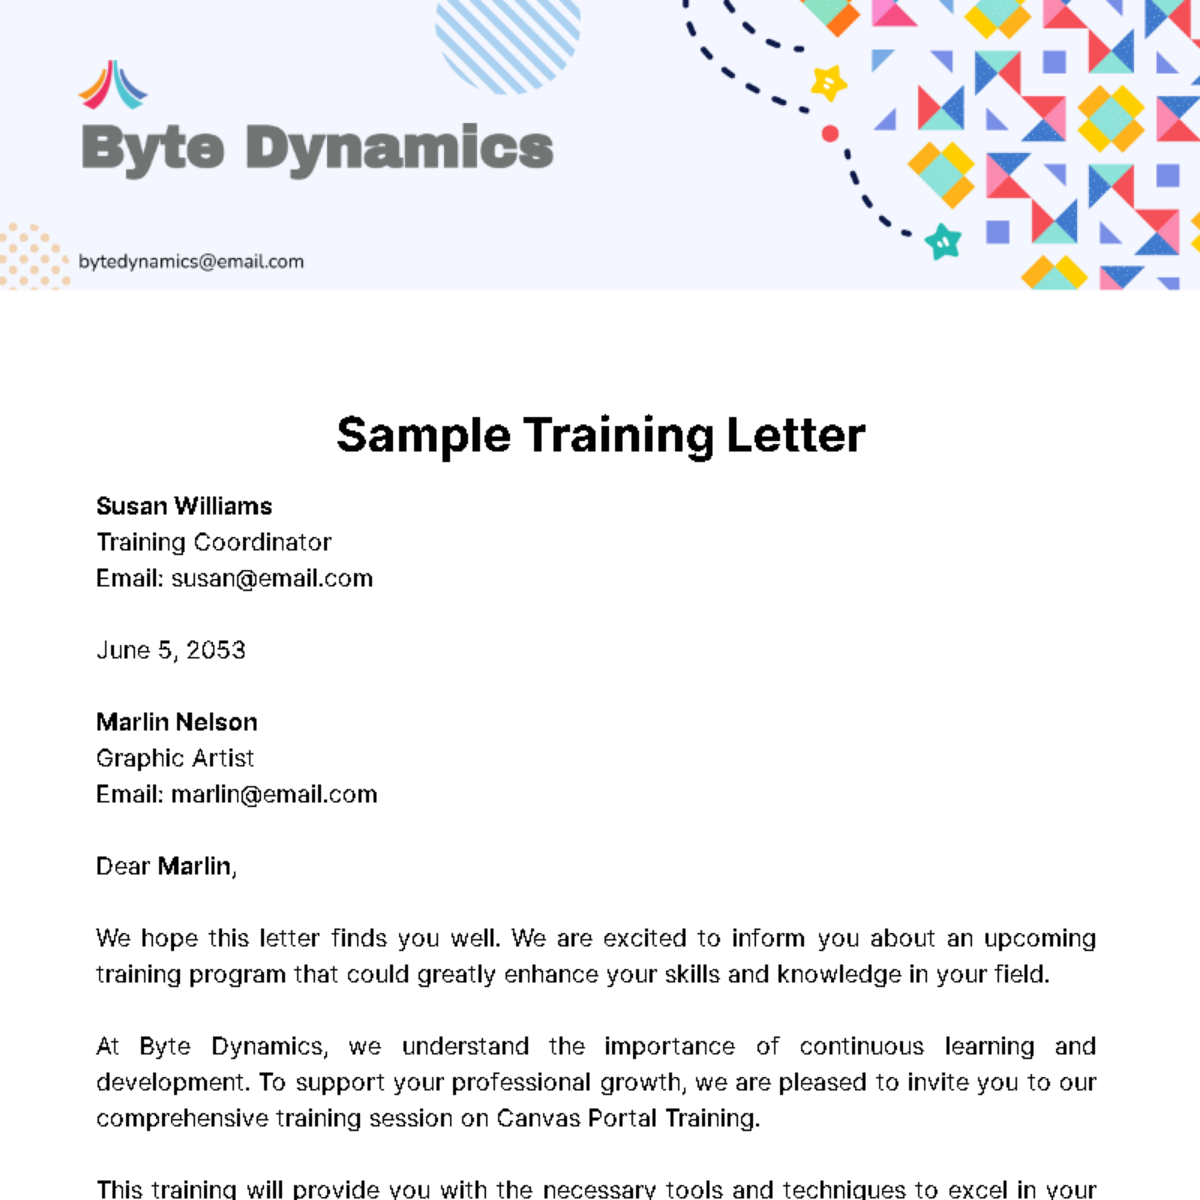 Sample Training Letter Template